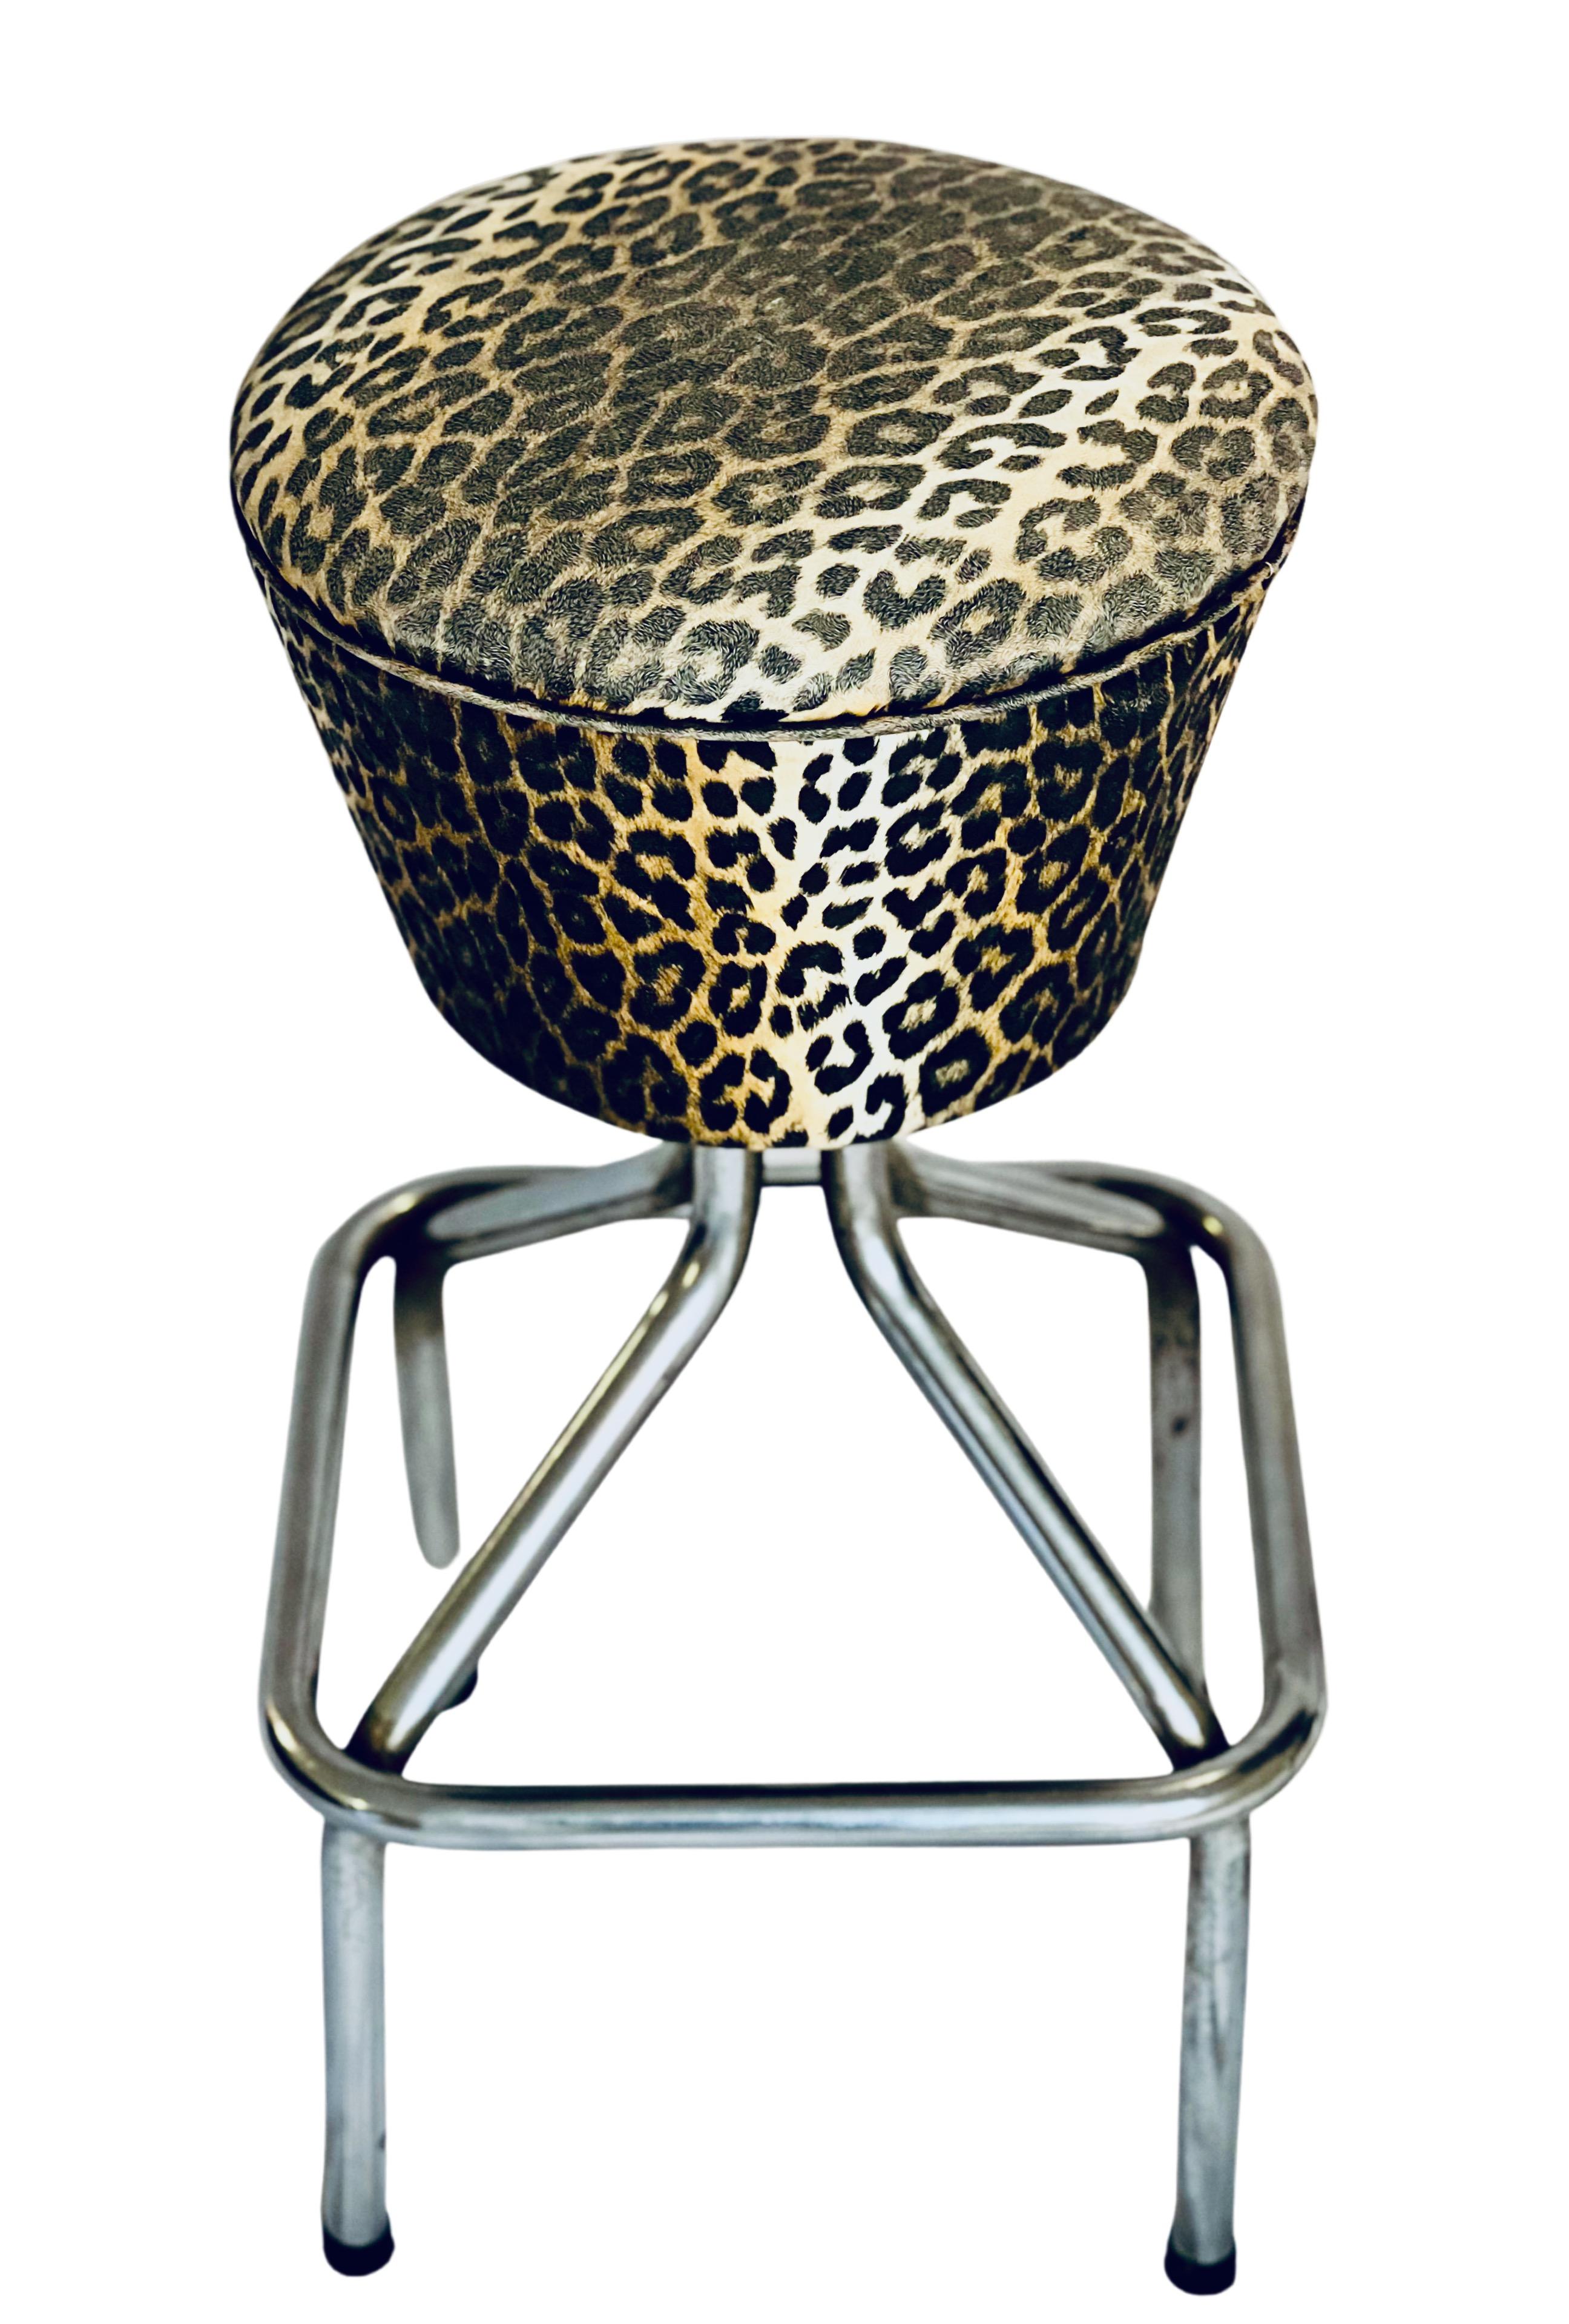 leopard print bar stools